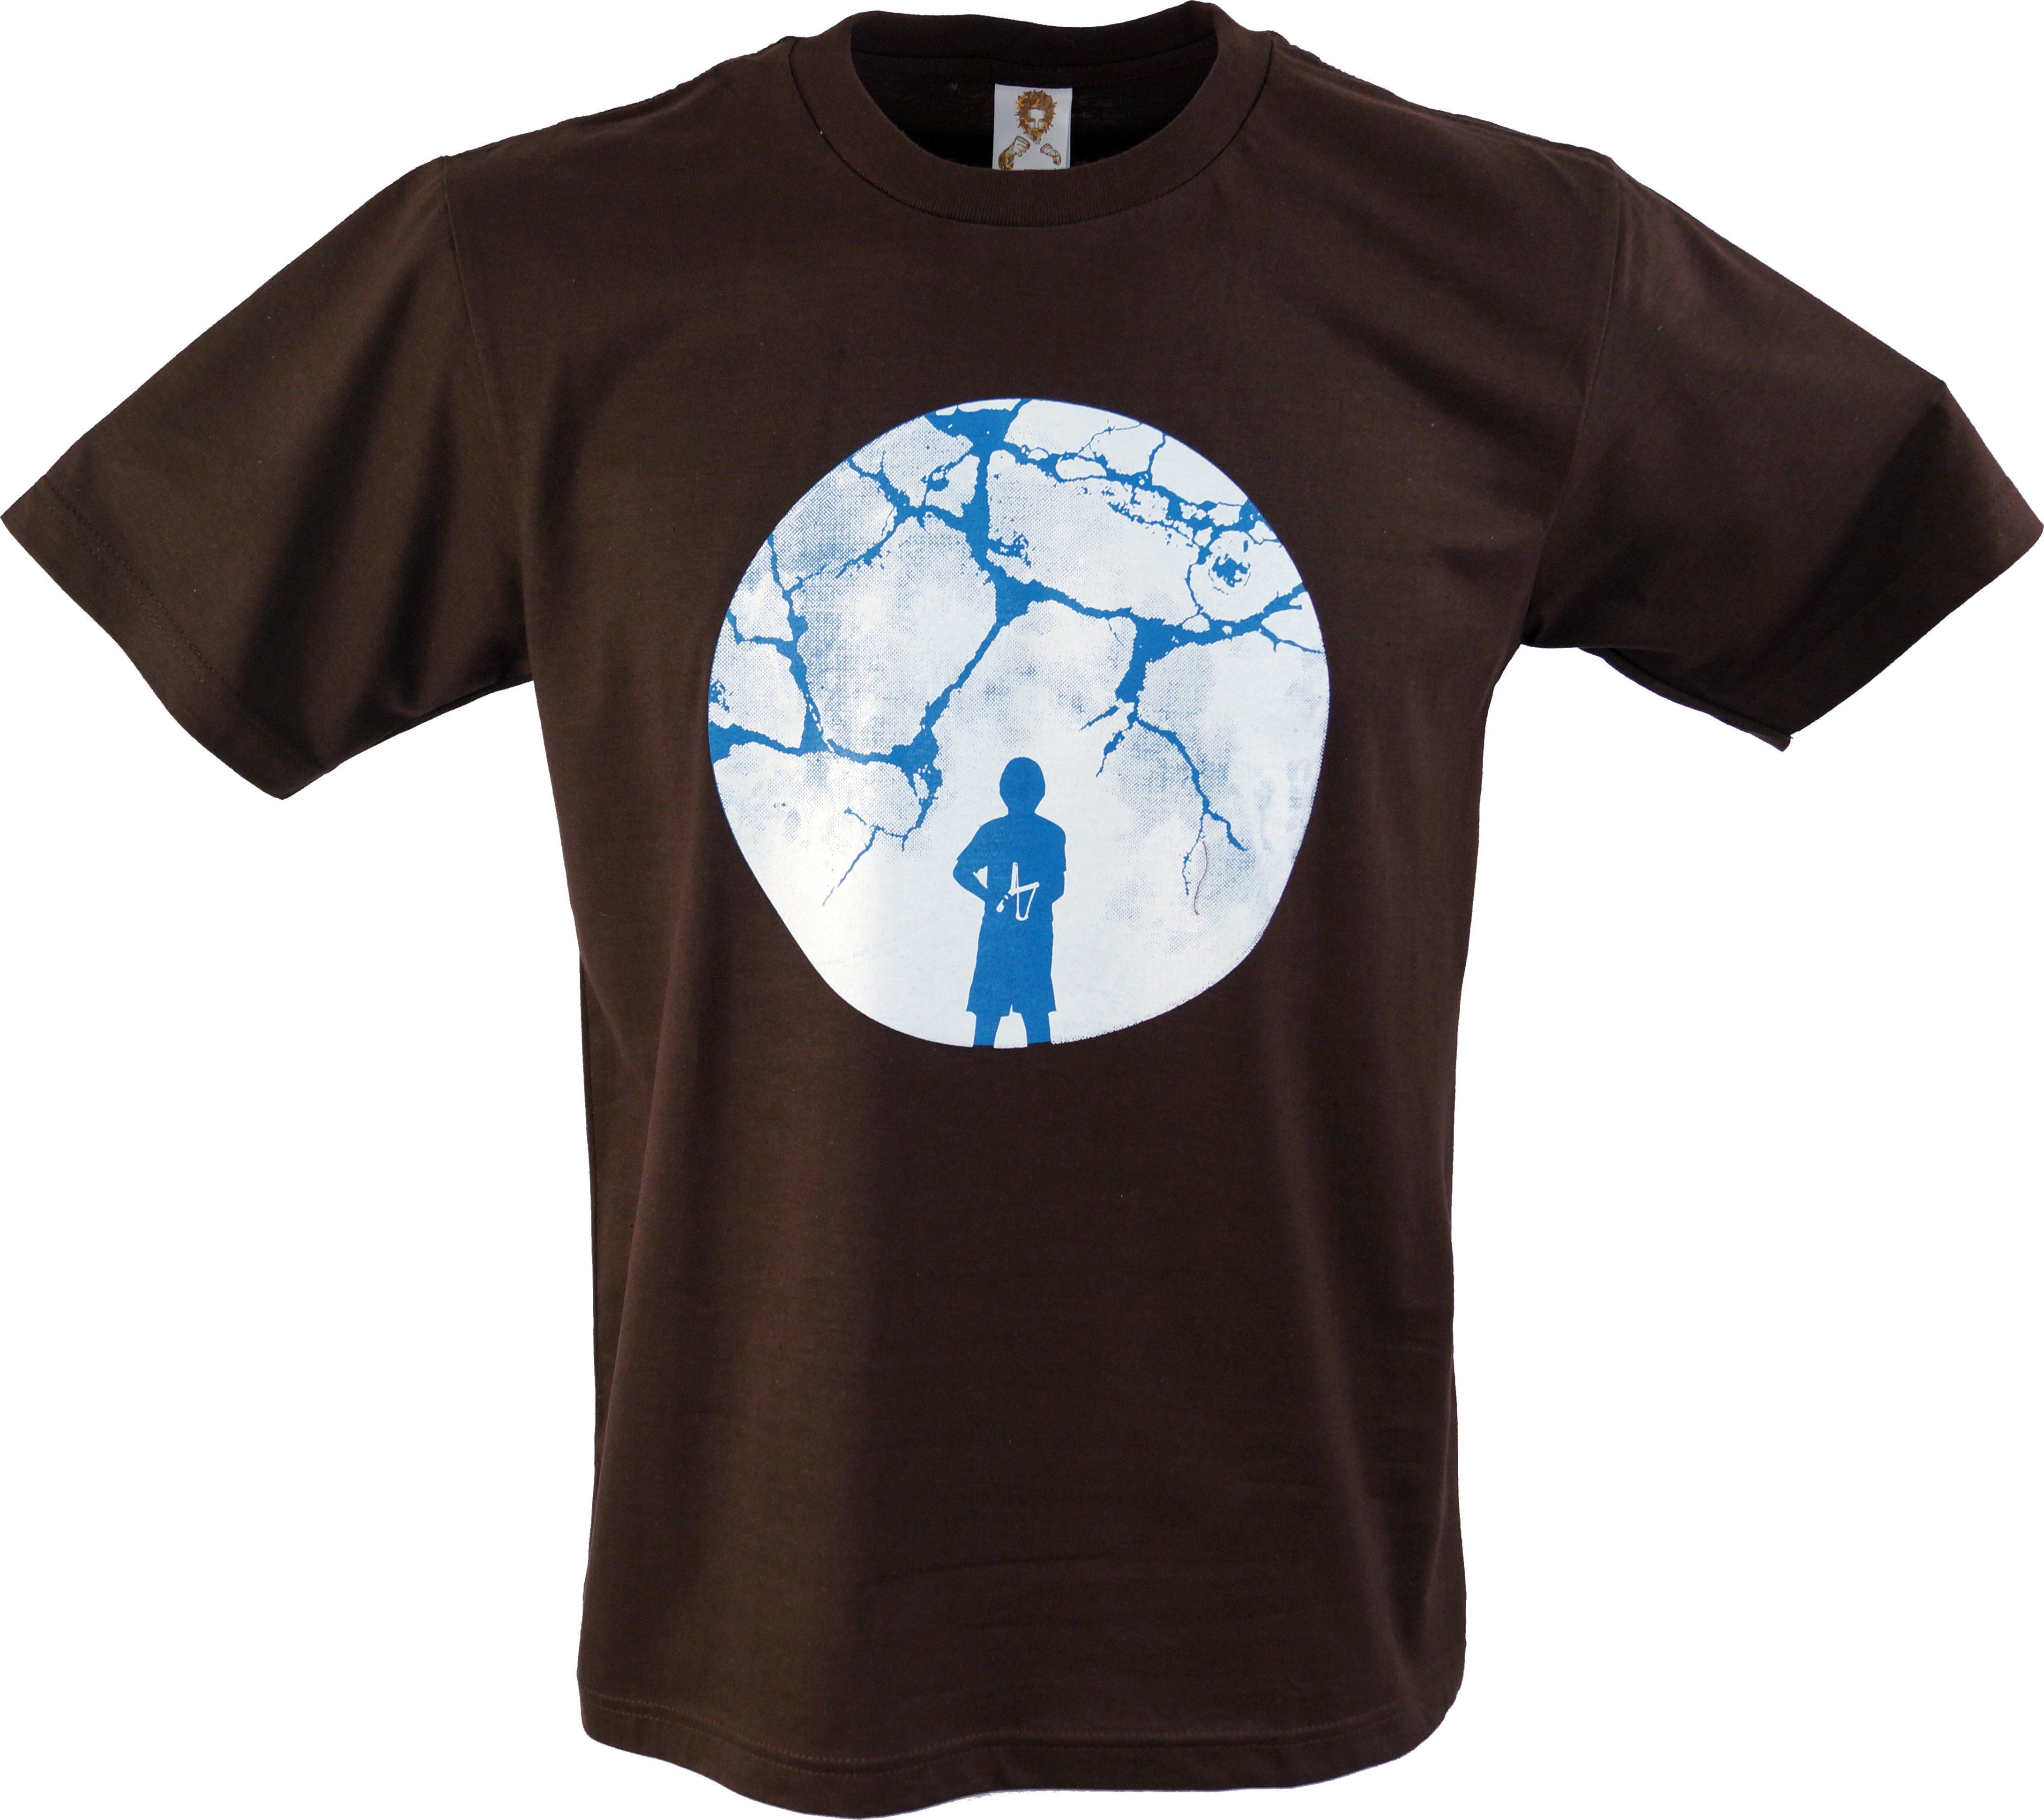 Guru-Shop T-Shirt Fun Retro Art T-Shirt - Mond Bruch/braun alternative Bekleidung